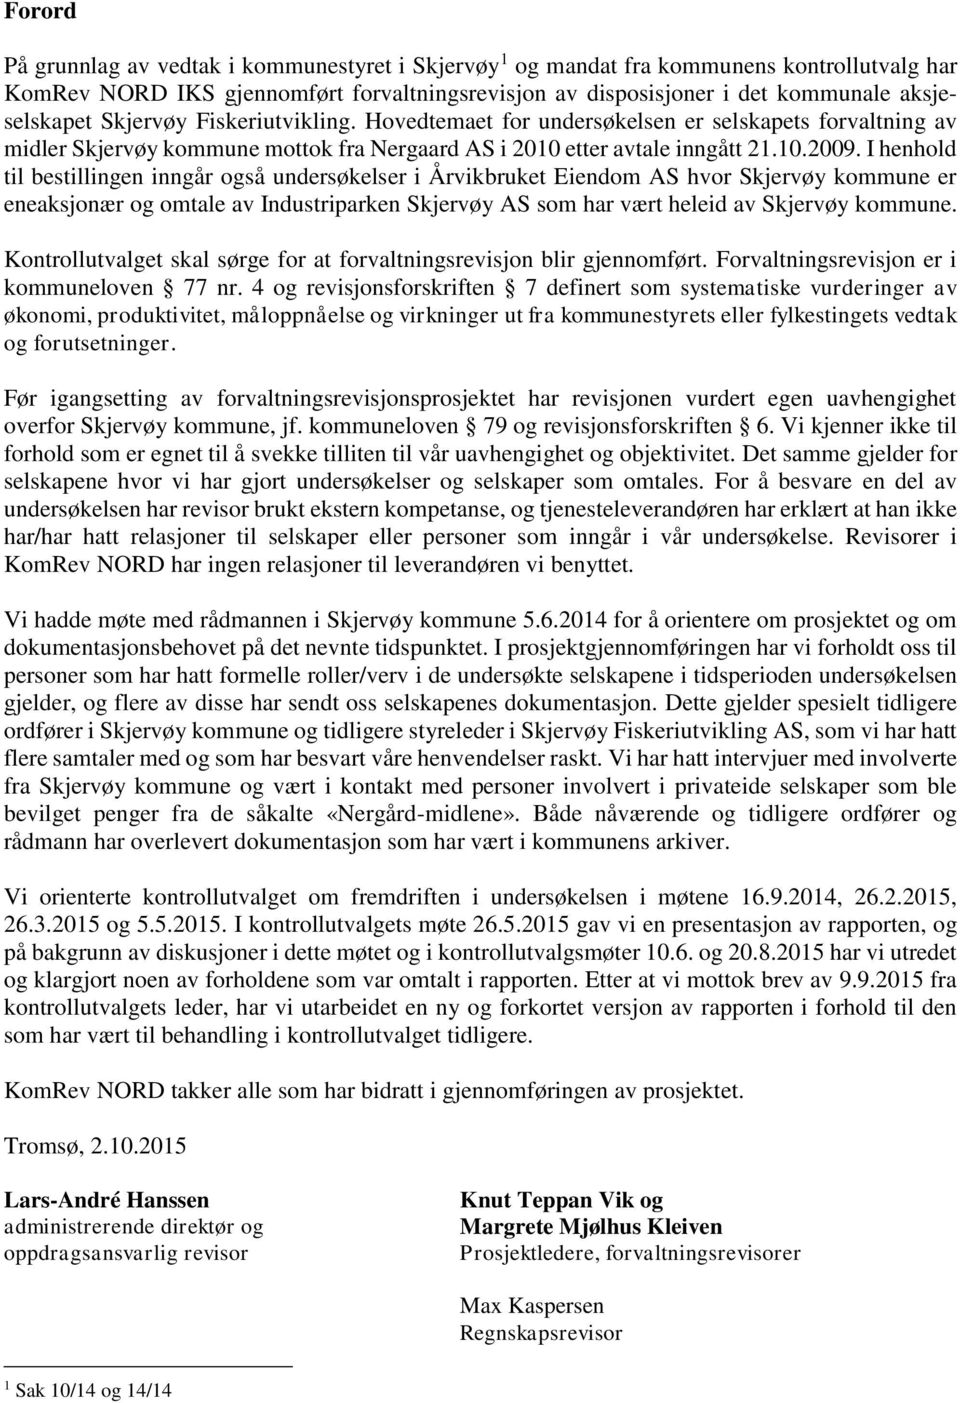 I henhold til bestillingen inngår også undersøkelser i Årvikbruket Eiendom AS hvor Skjervøy kommune er eneaksjonær og omtale av Industriparken Skjervøy AS som har vært heleid av Skjervøy kommune.